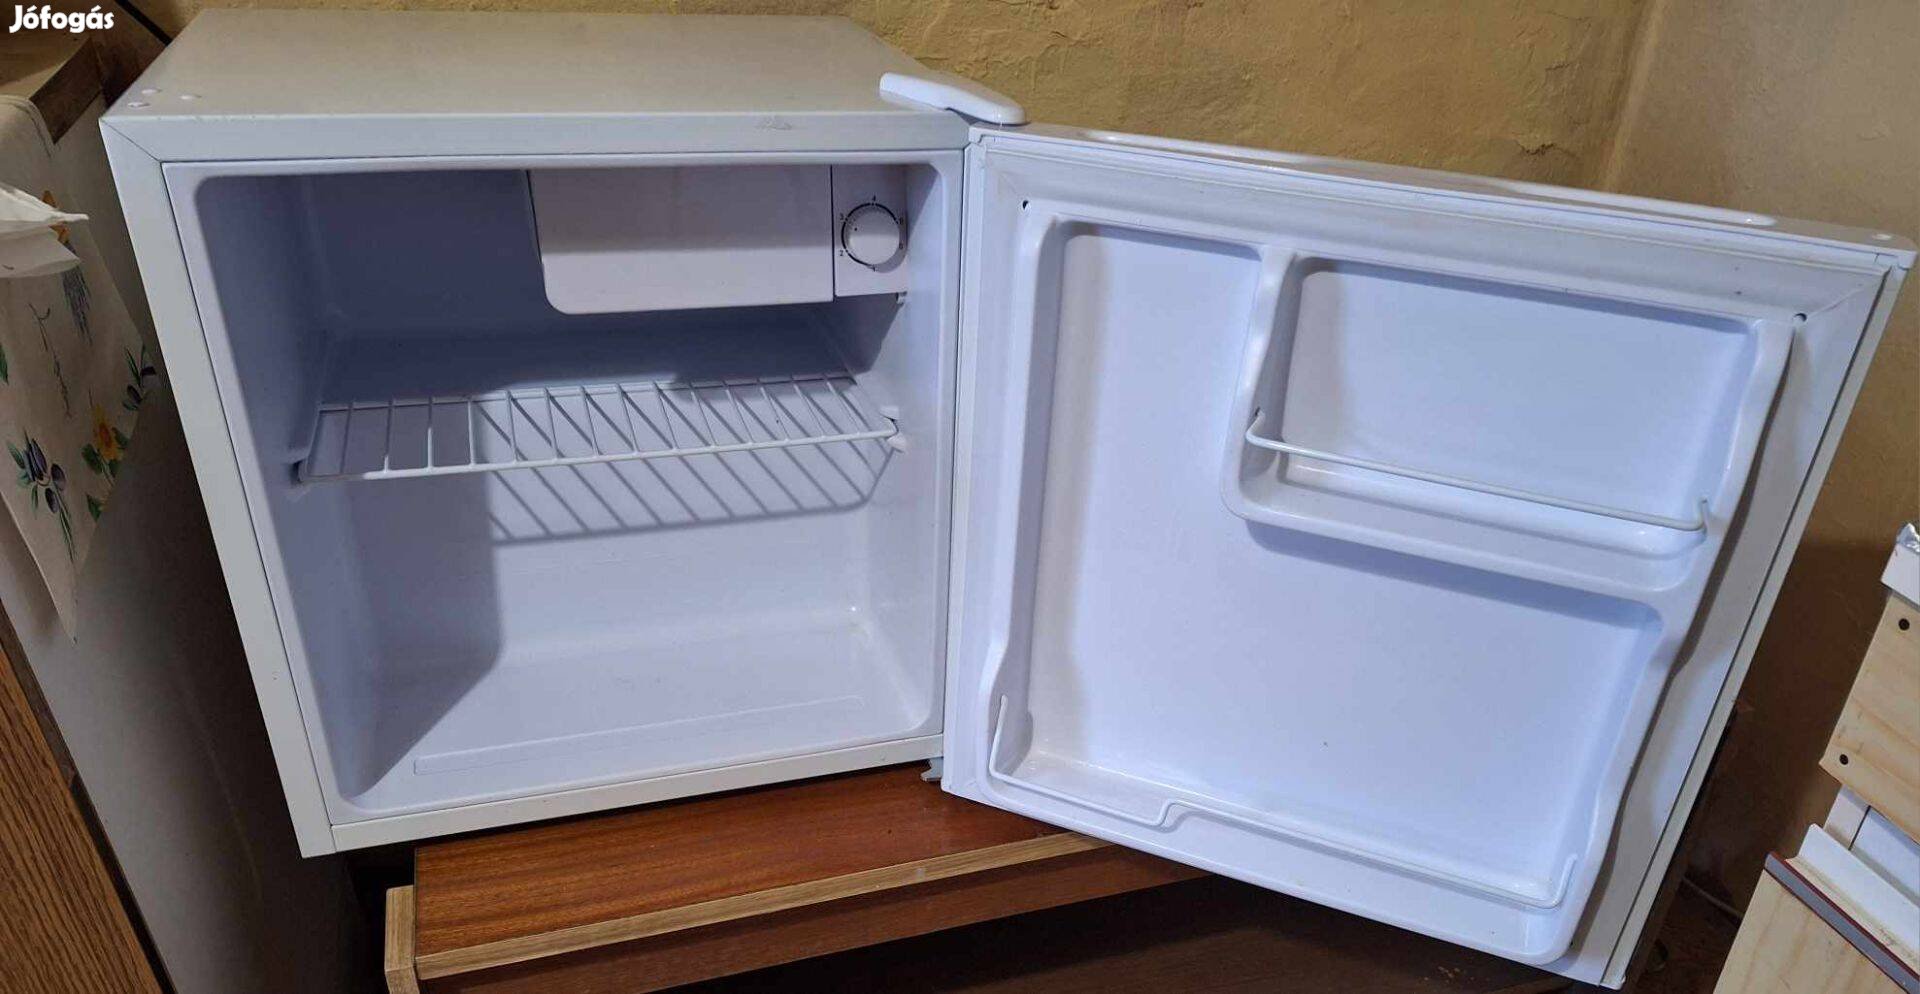 Eladó kis hűtőszekrény